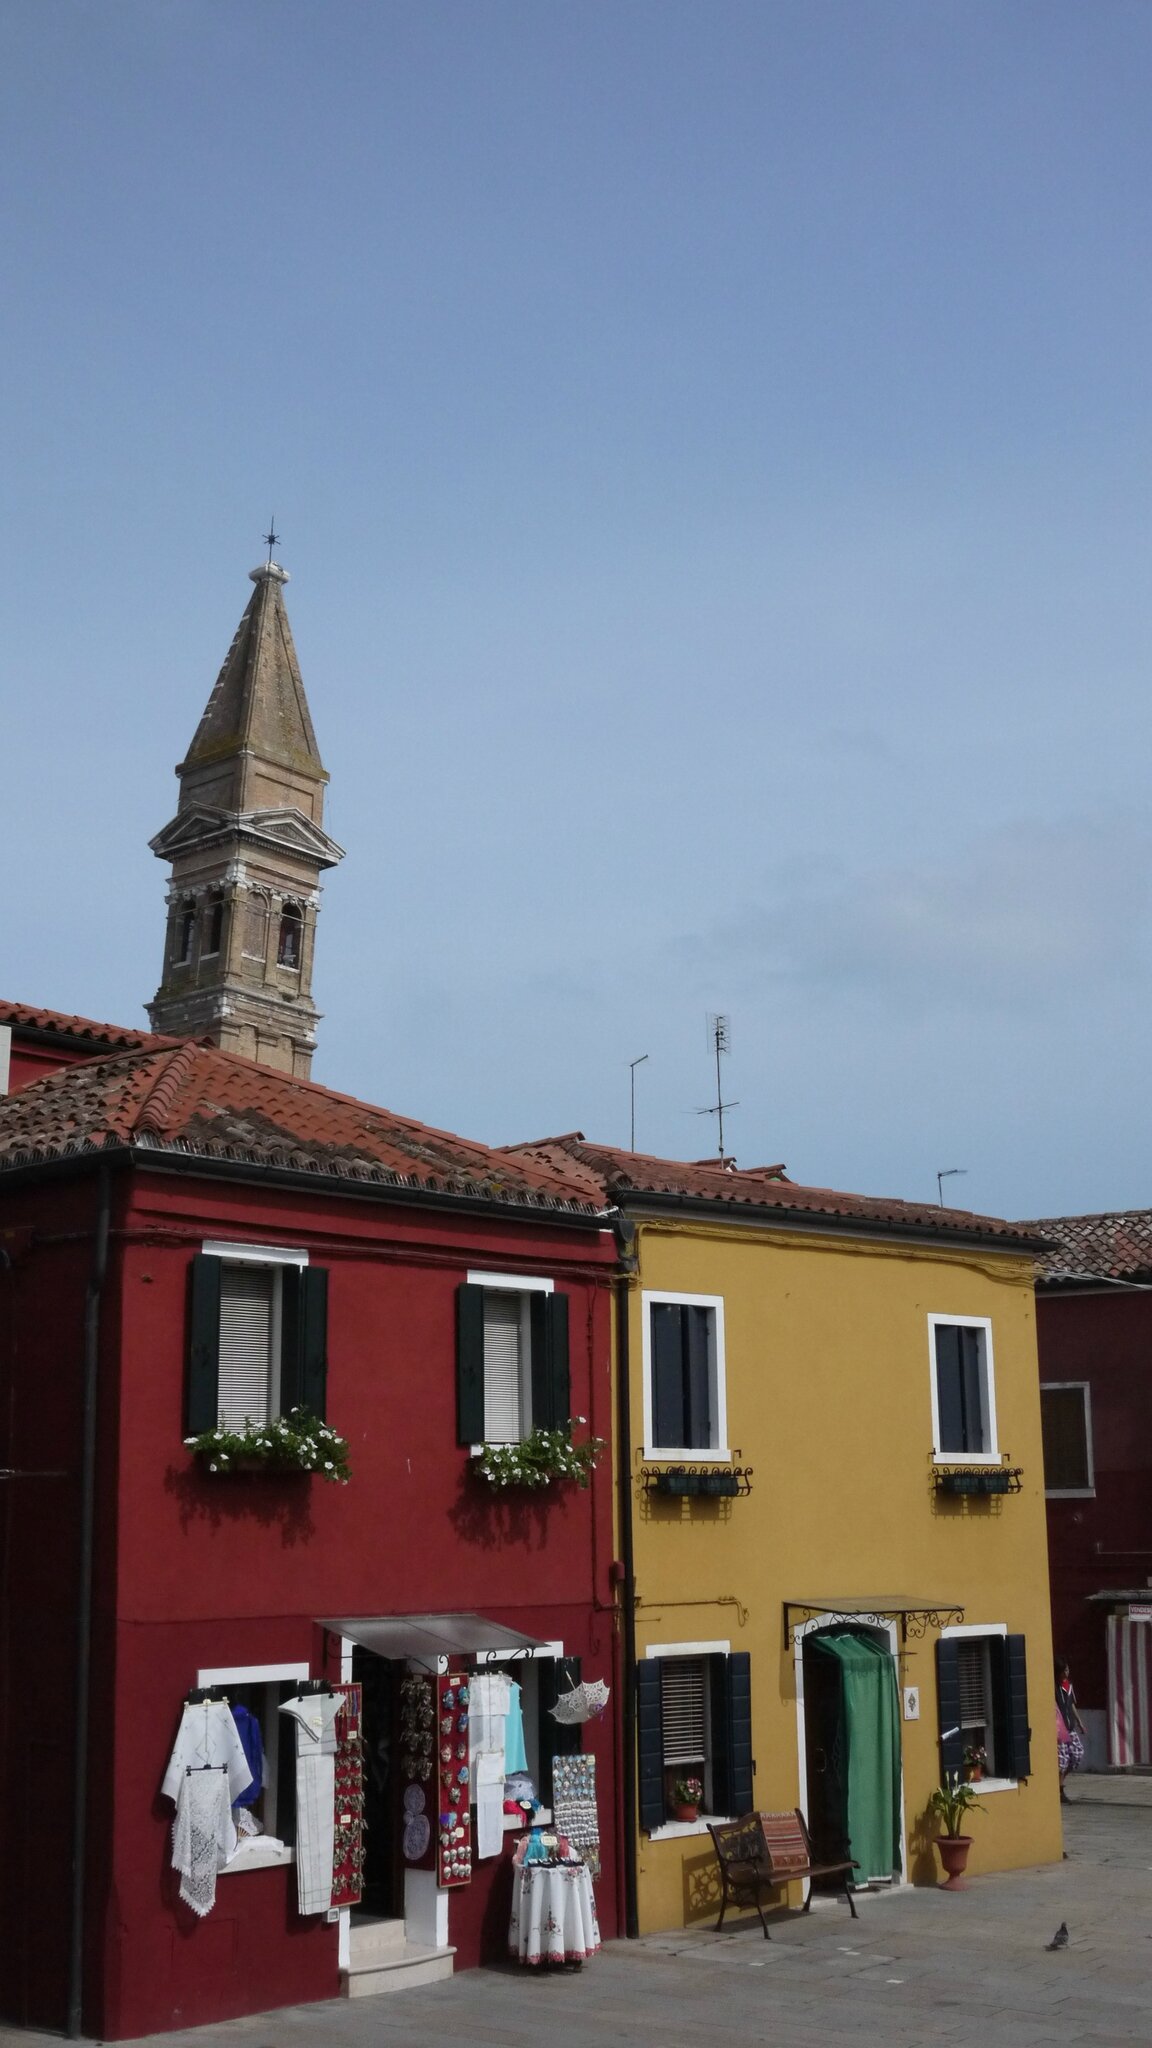 Le campanile sur l'île de Burano